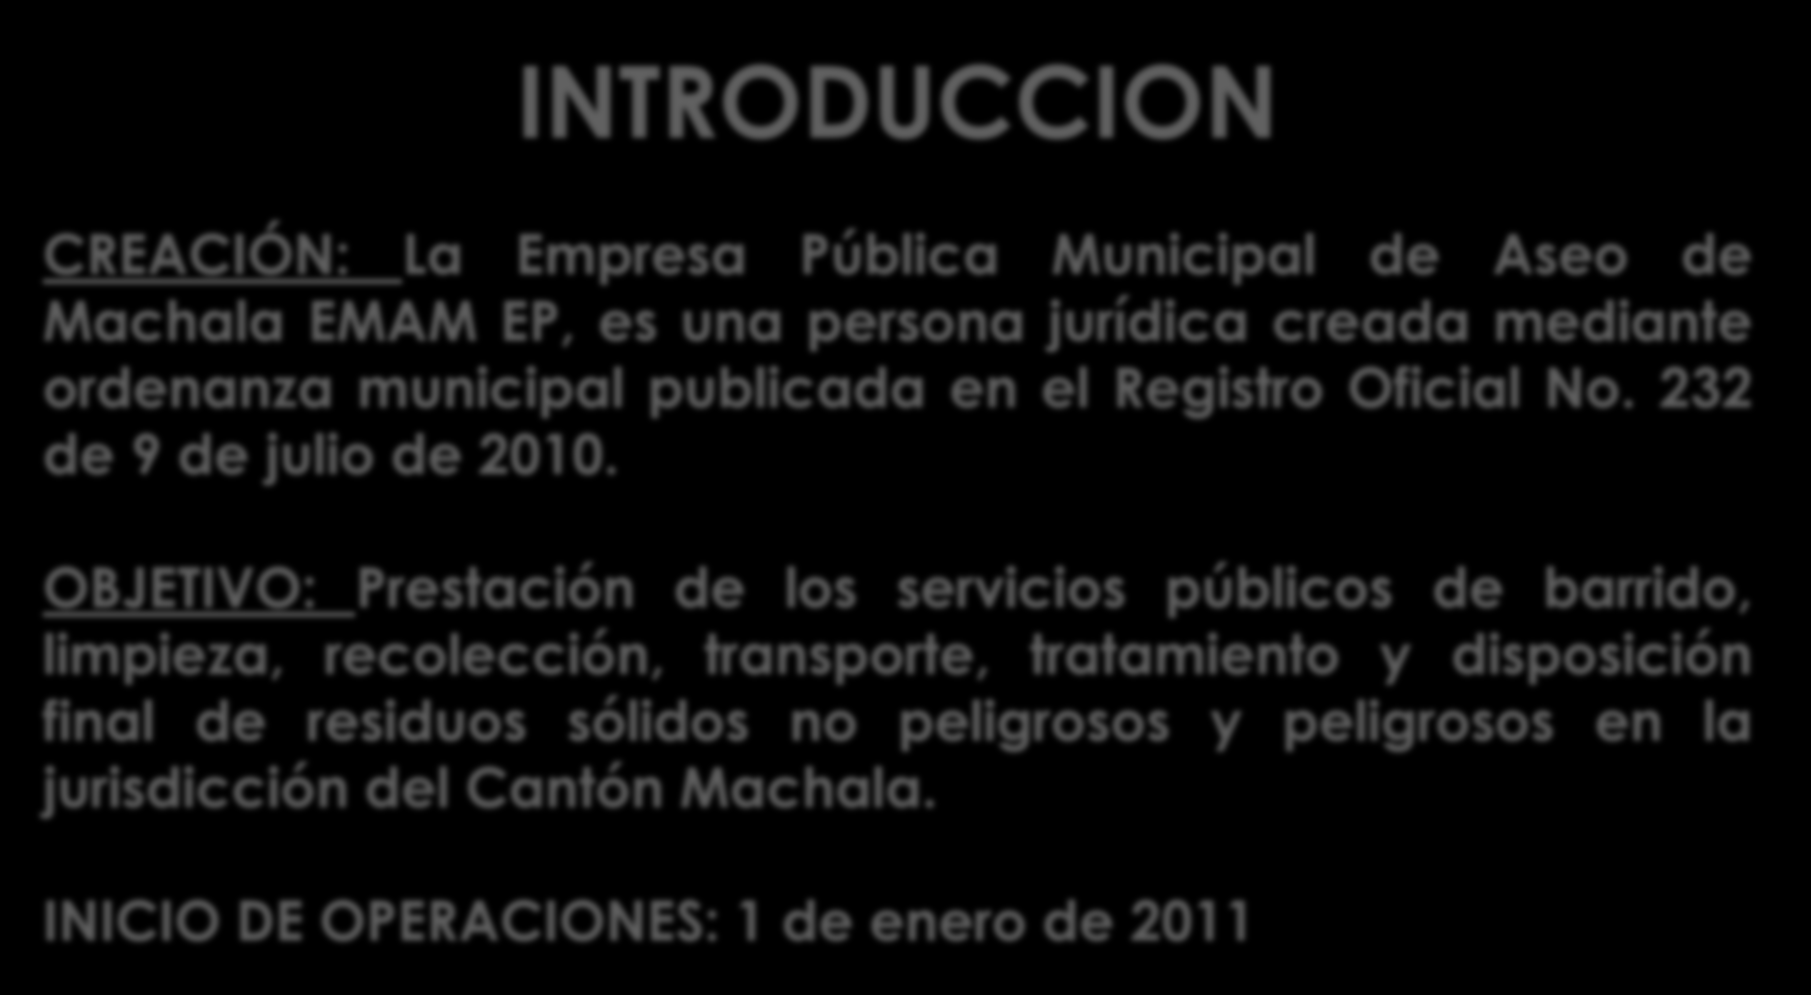 INTRODUCCION CREACIÓN: La Empresa Pública Municipal de Aseo de Machala EMAM EP, es una persona jurídica creada mediante ordenanza municipal publicada en el Registro Oficial No.